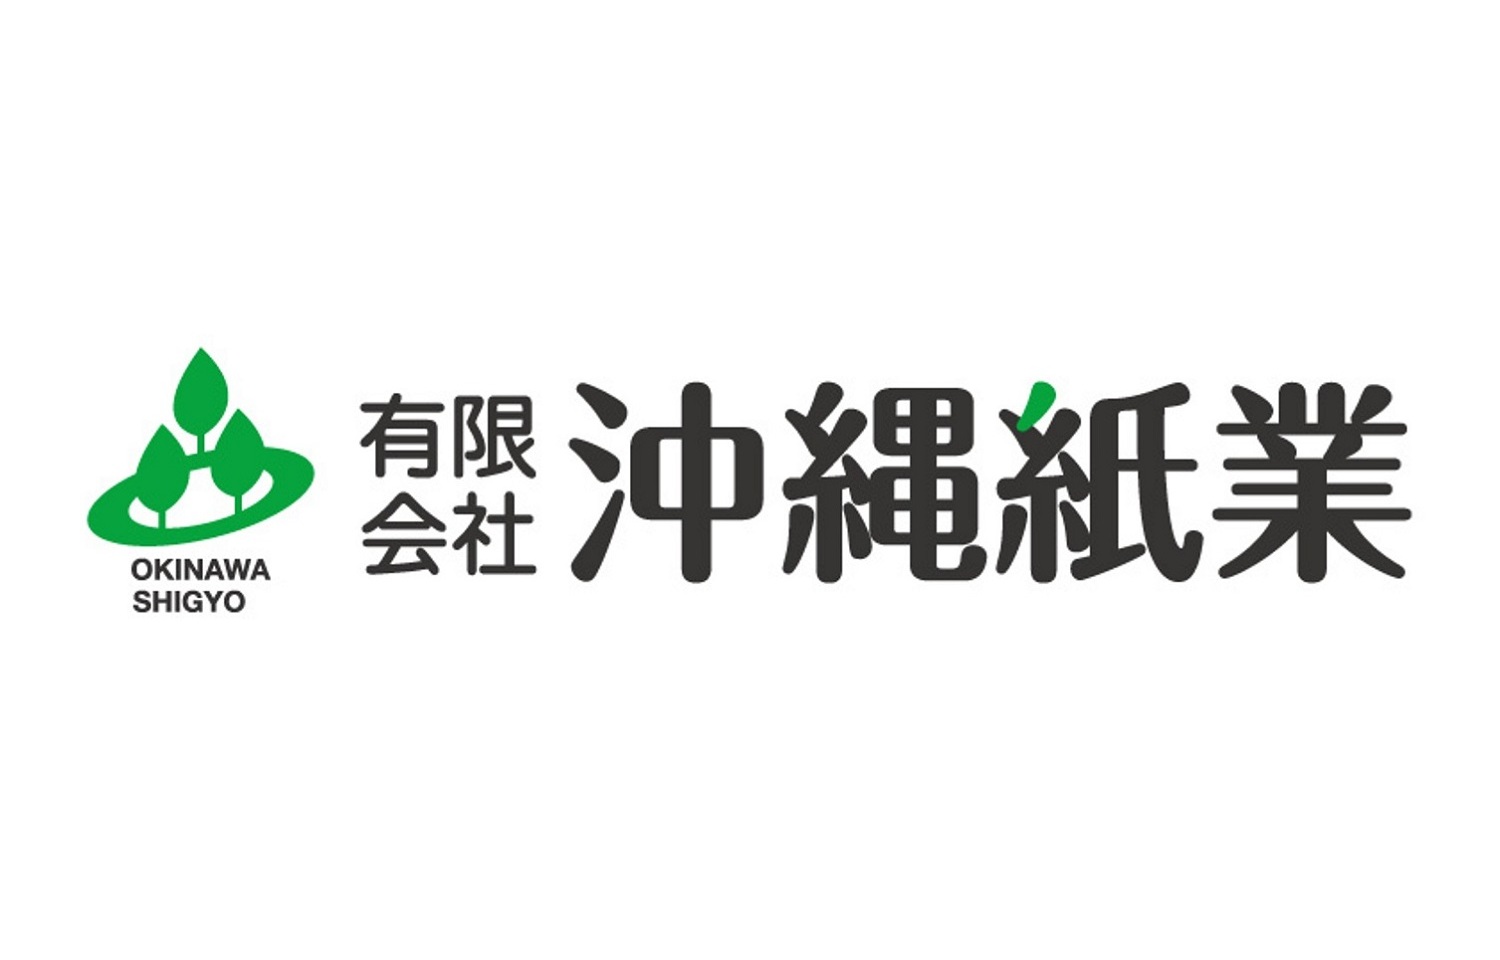 【ロゴ】
有限会社沖縄紙業